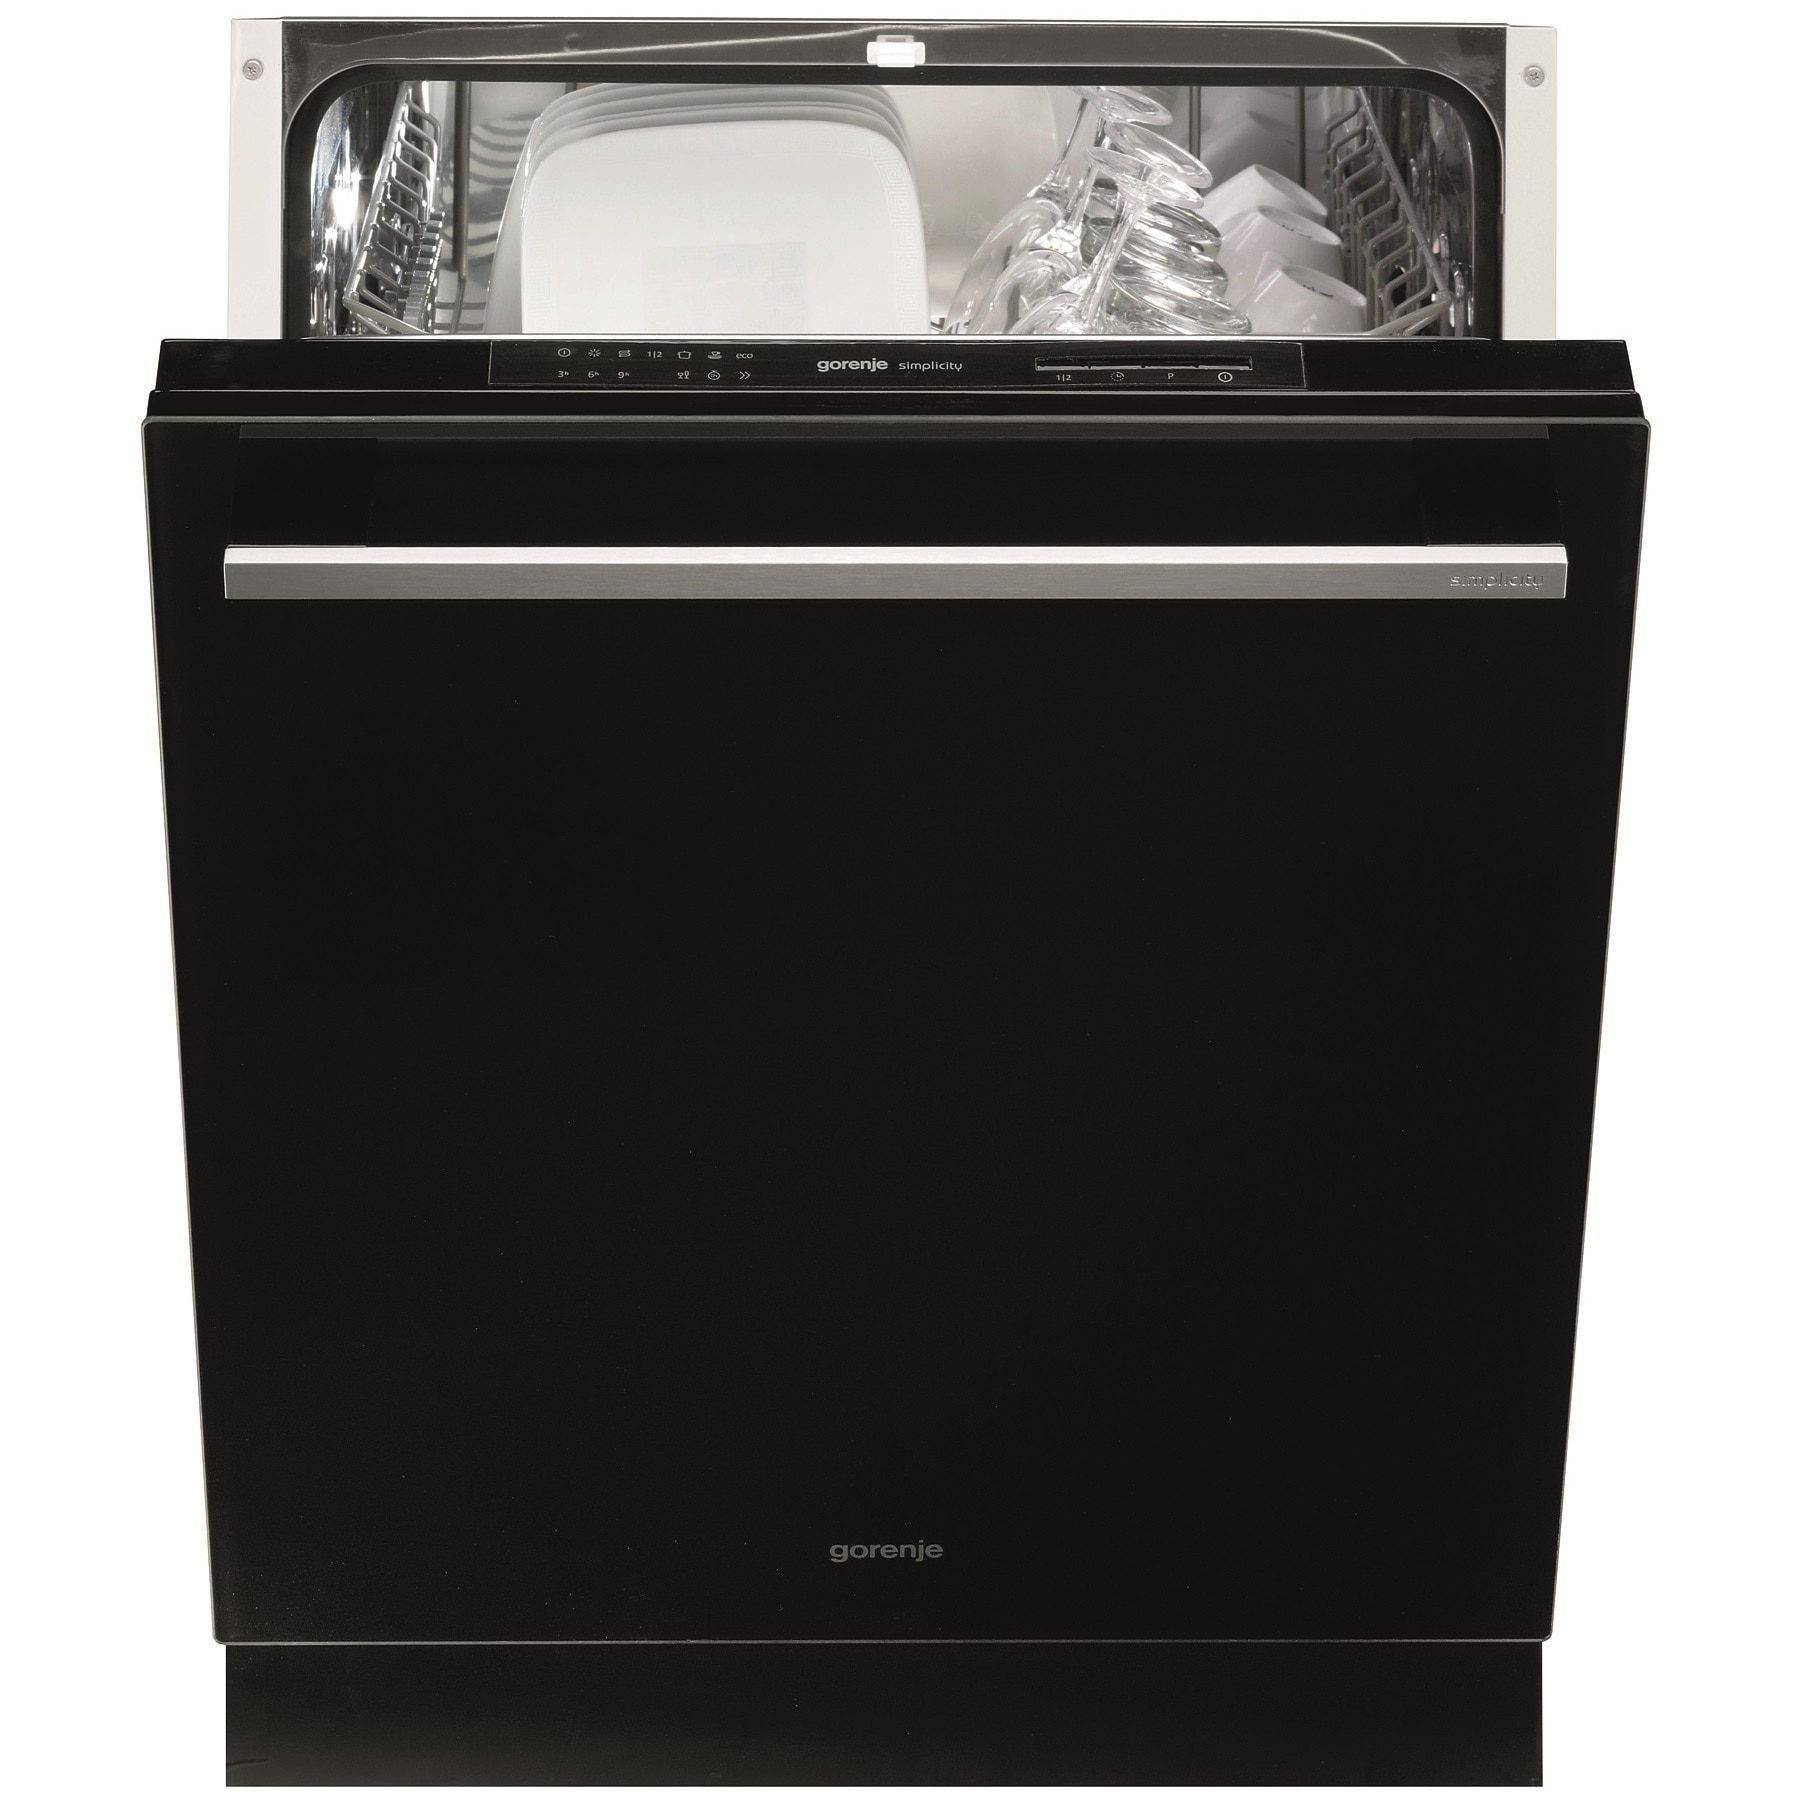 Посудомоечная машина горенье отдельностоящая. Посудомоечная машина 60 см встраиваемая Gorenje. Посудомоечная машина горение 60 см отдельностоящая. Горения посудомоечная машина 60 см. Встраиваемая посудомоечная машина 60 см Gorenje gv663c60.